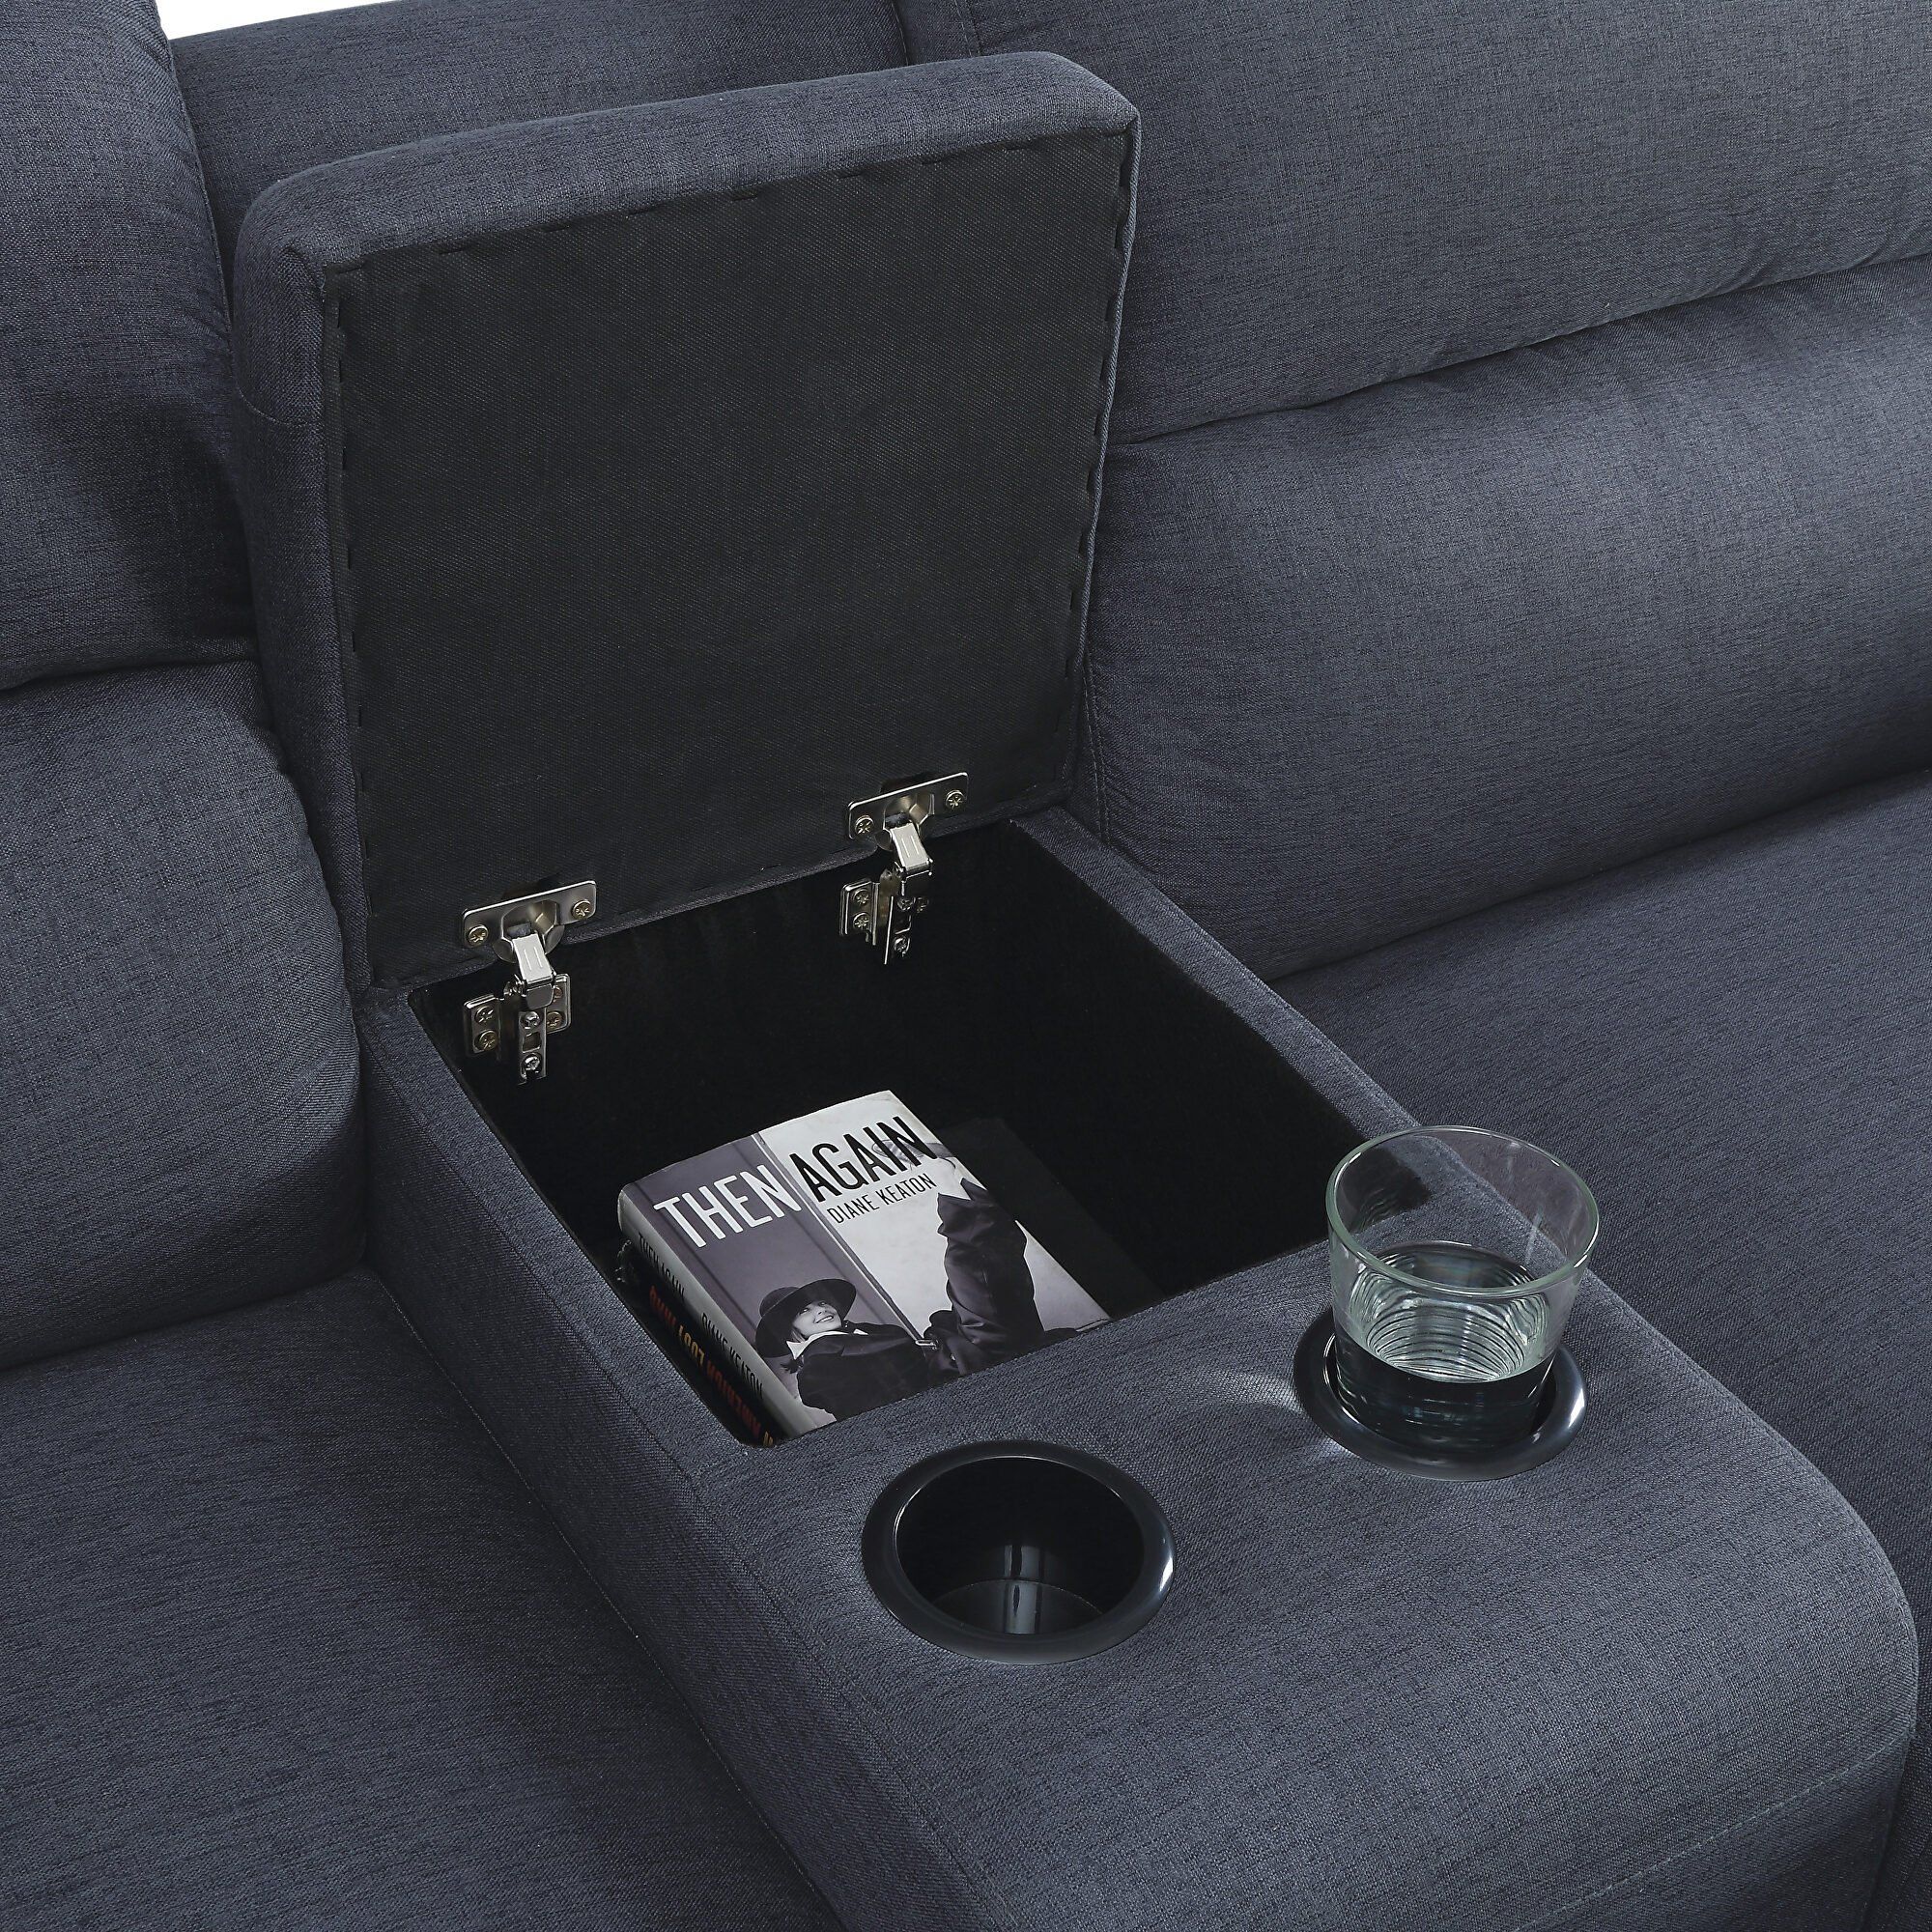  Bộ ghế sofa góc L GT75 Walcher 2m8 x 1m6 vải bố nỉ màu xanh than 